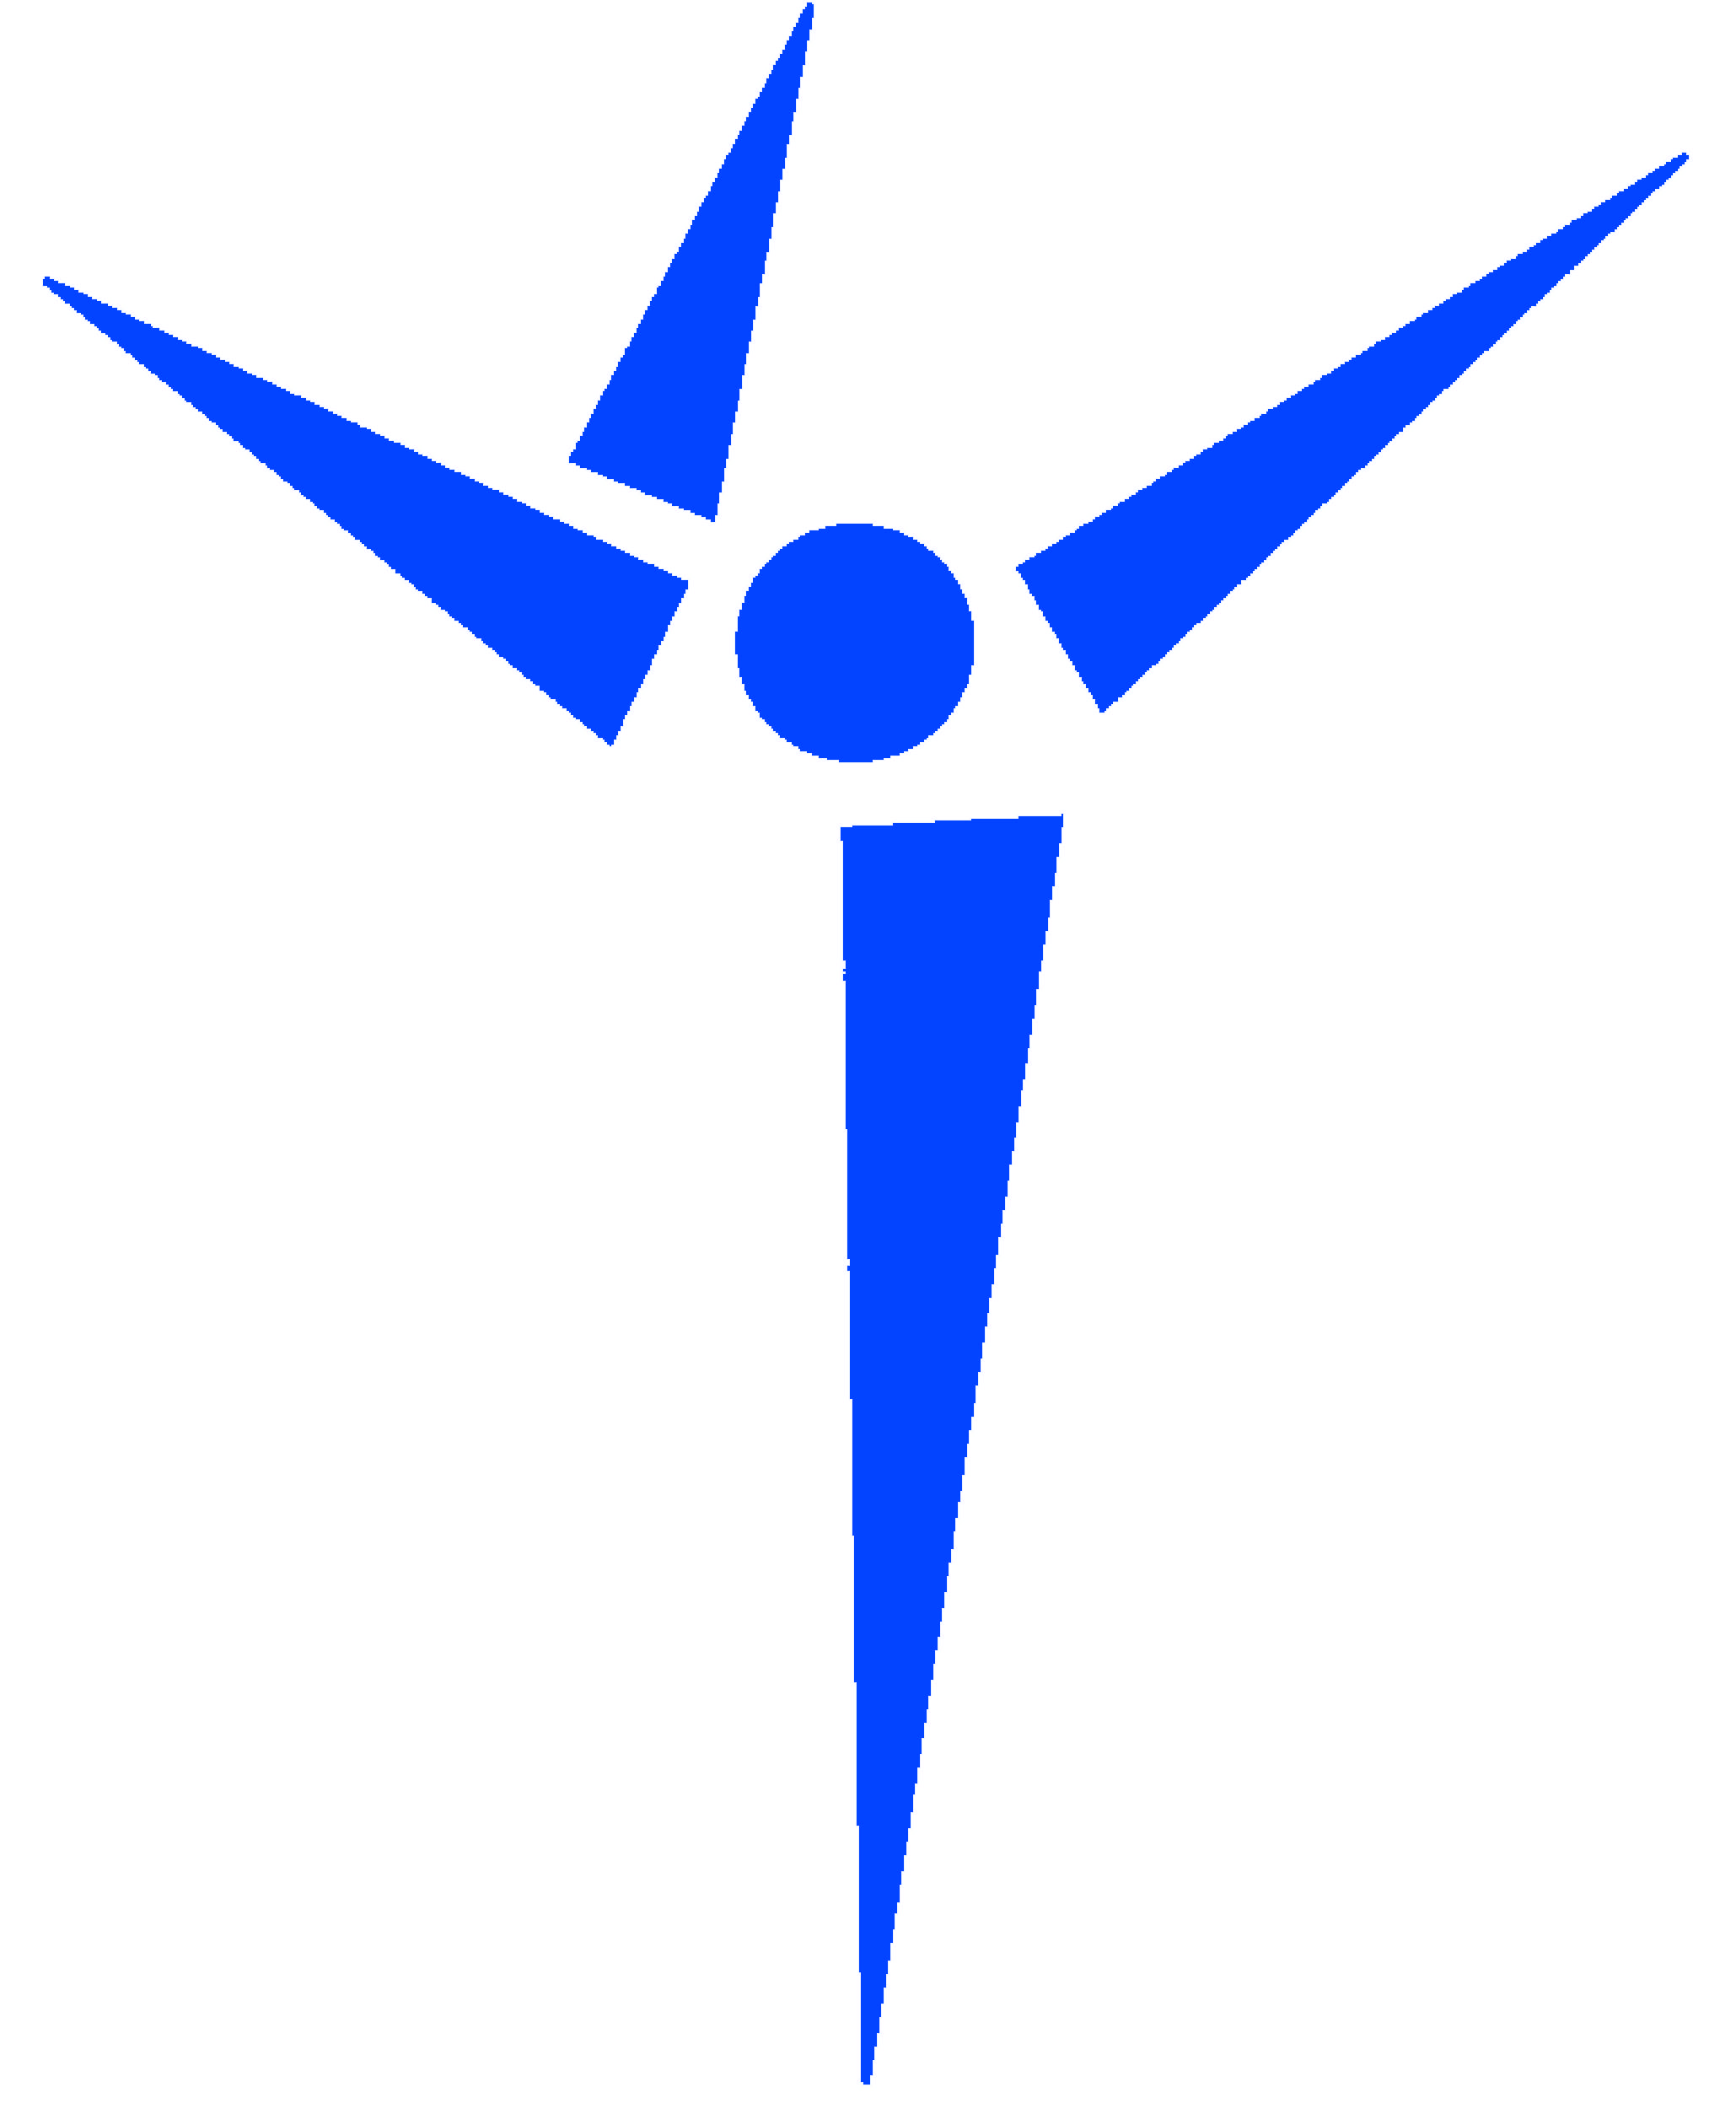 Liikunnan ja terveystiedon opettajat ry:n logo